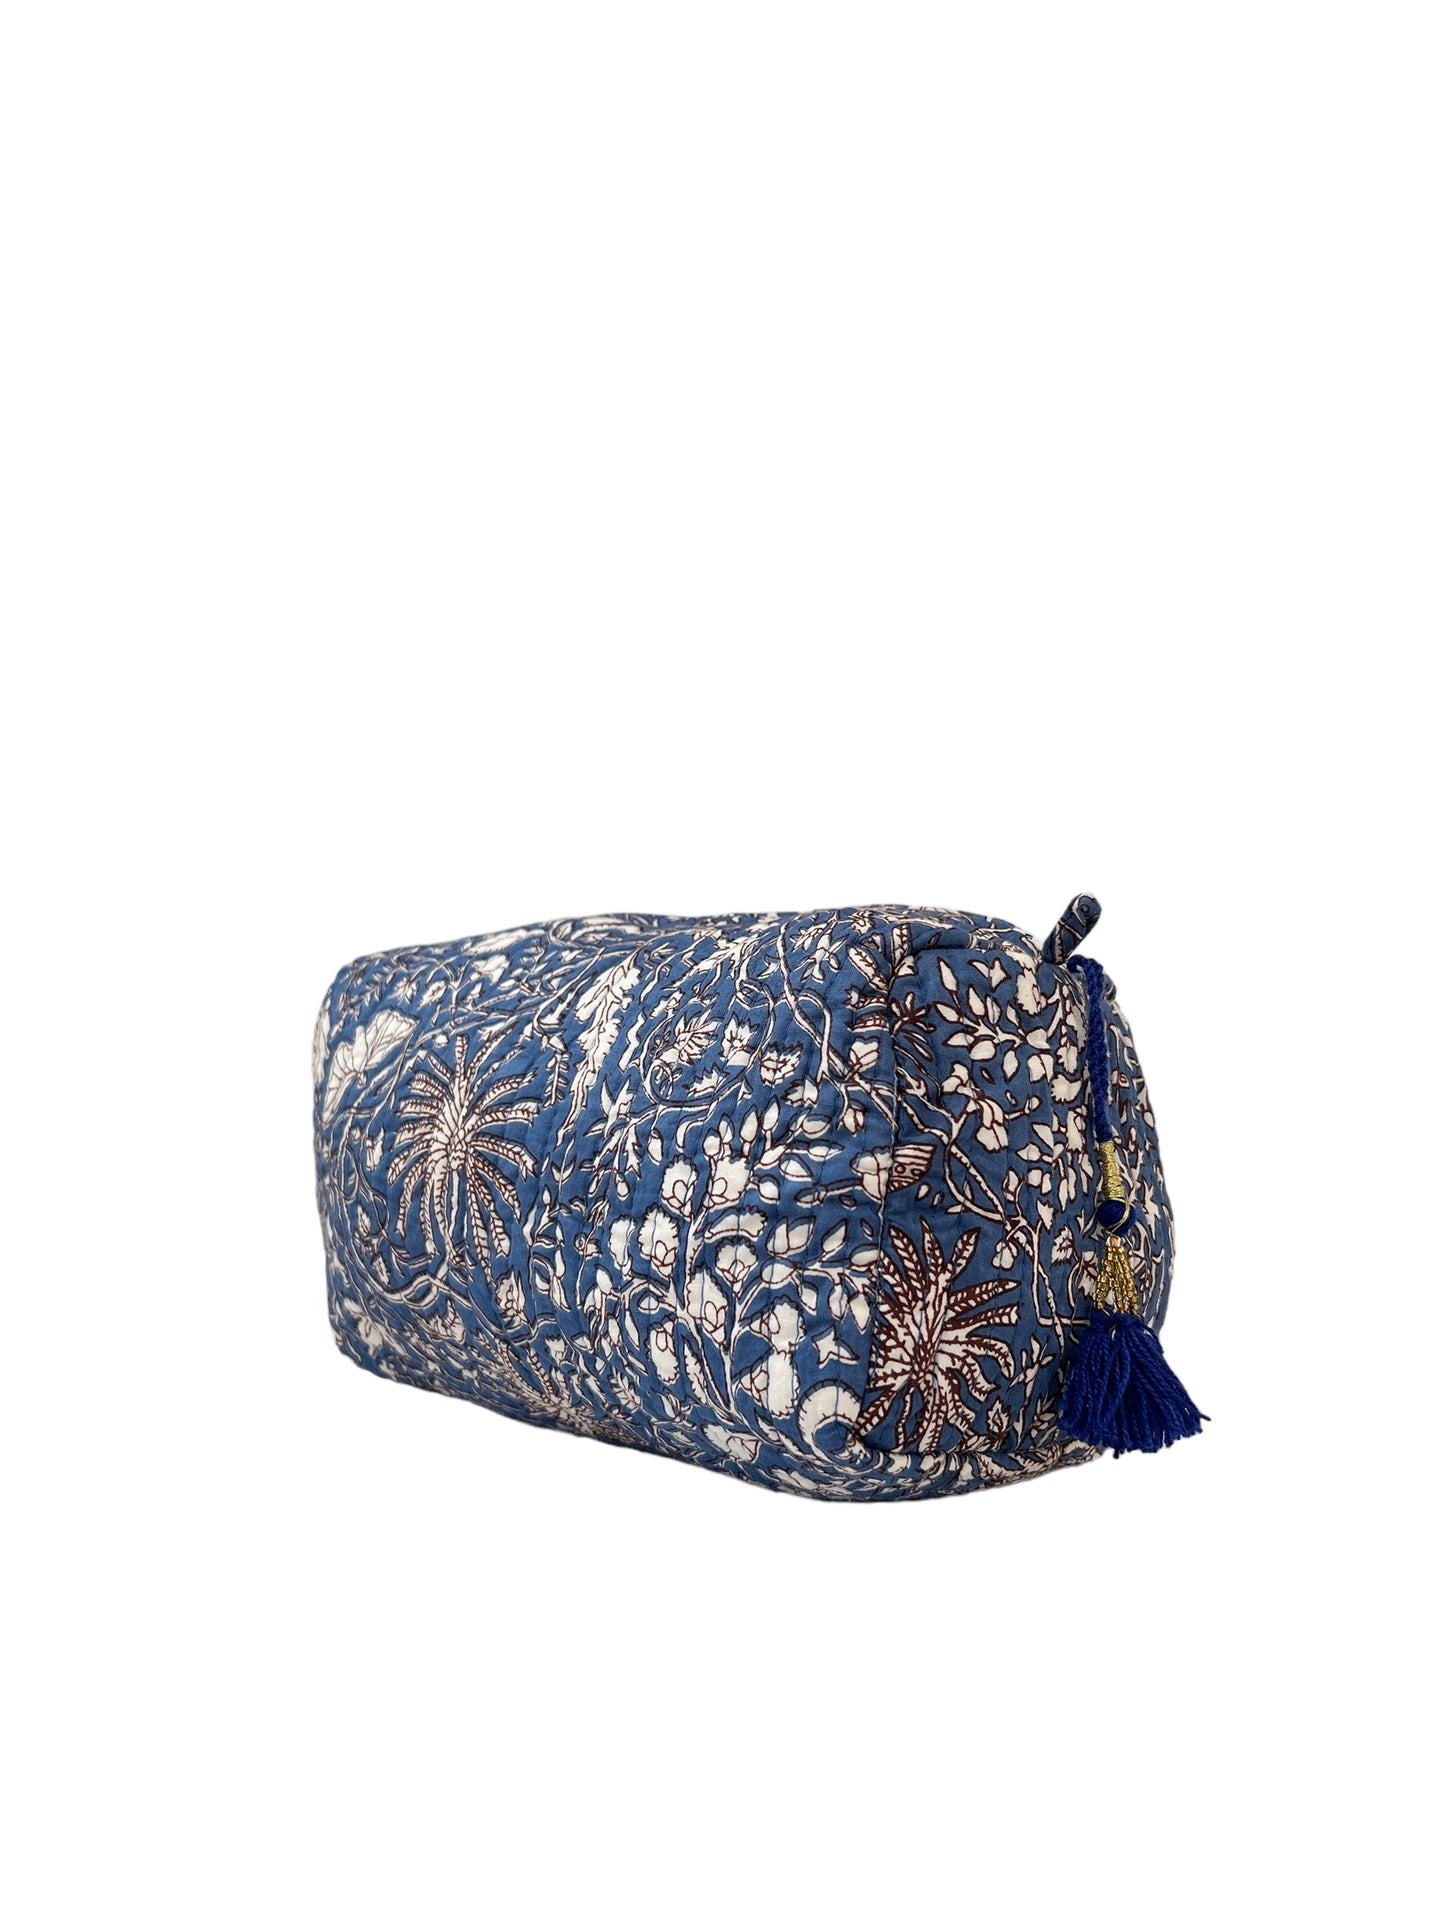 Make Up Bag Blue Brown Floral (M060)